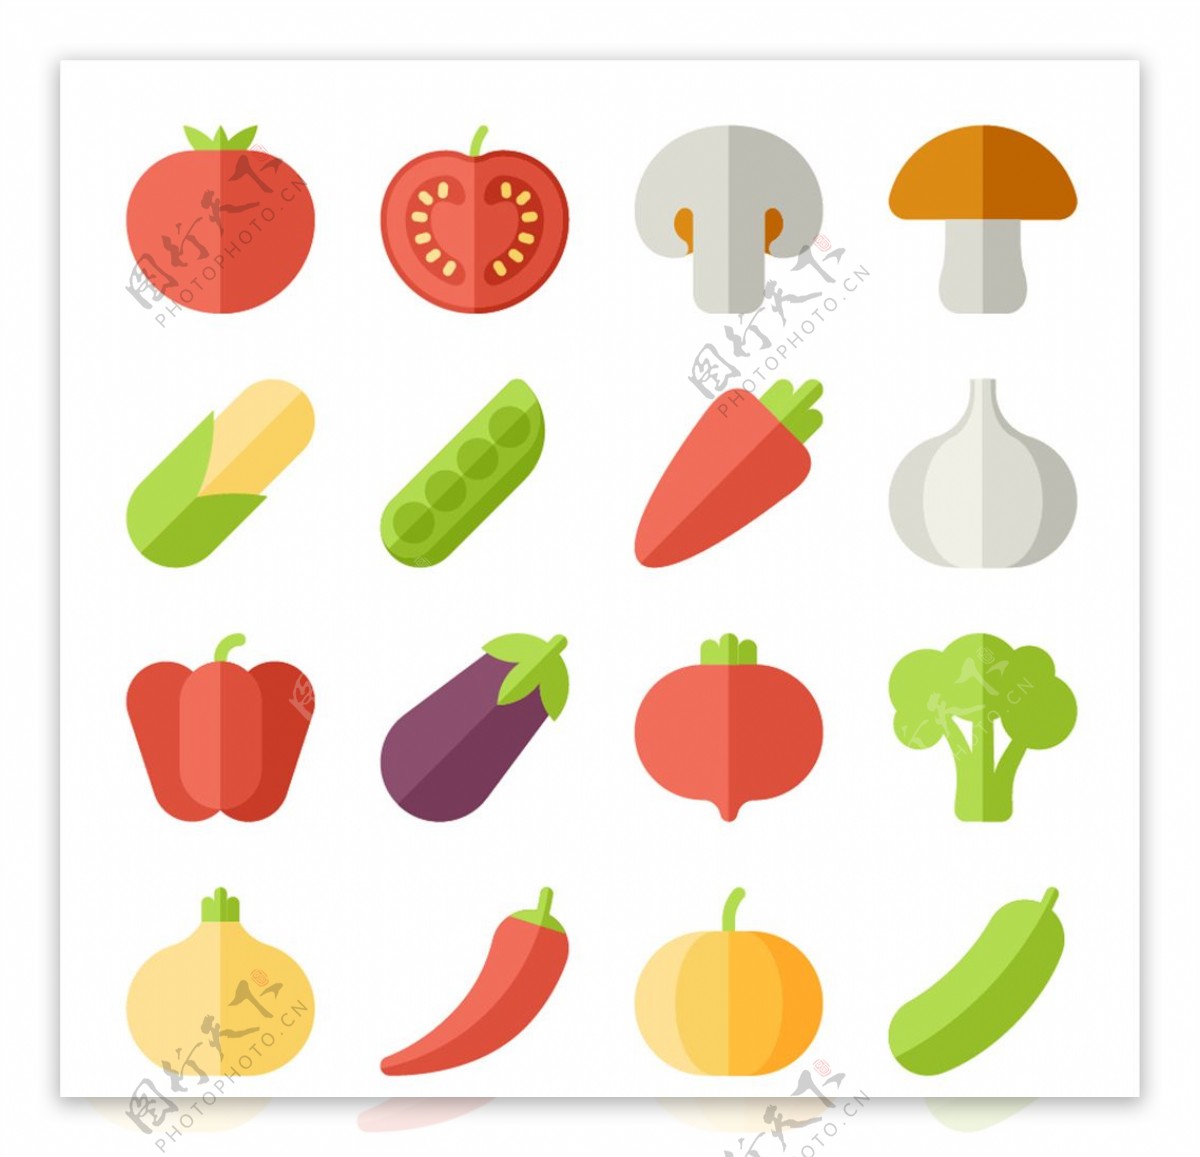 多款扁平化瓜果蔬菜图标矢量素材